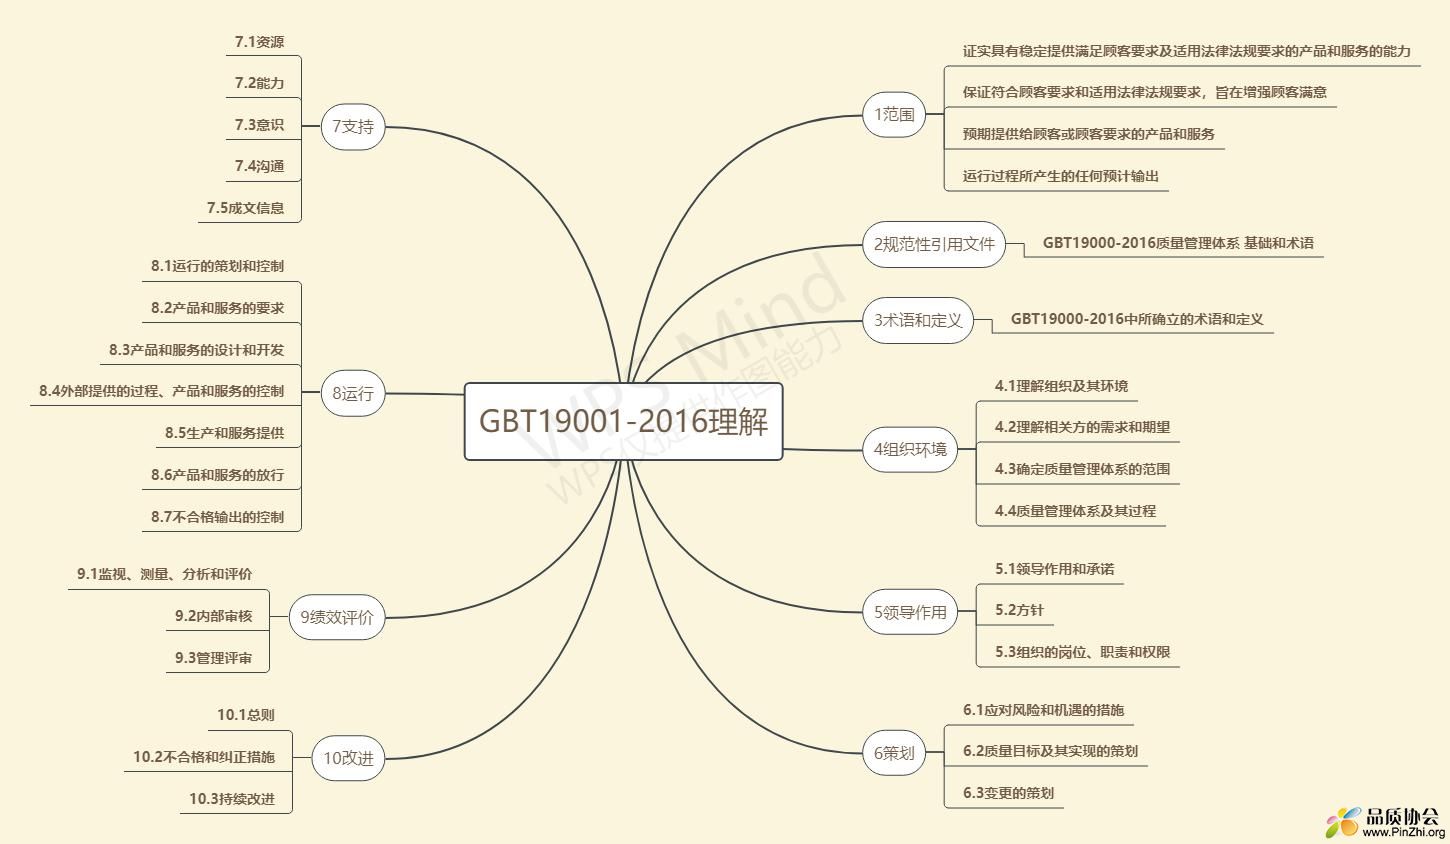 GBT19001-2016 思维导图